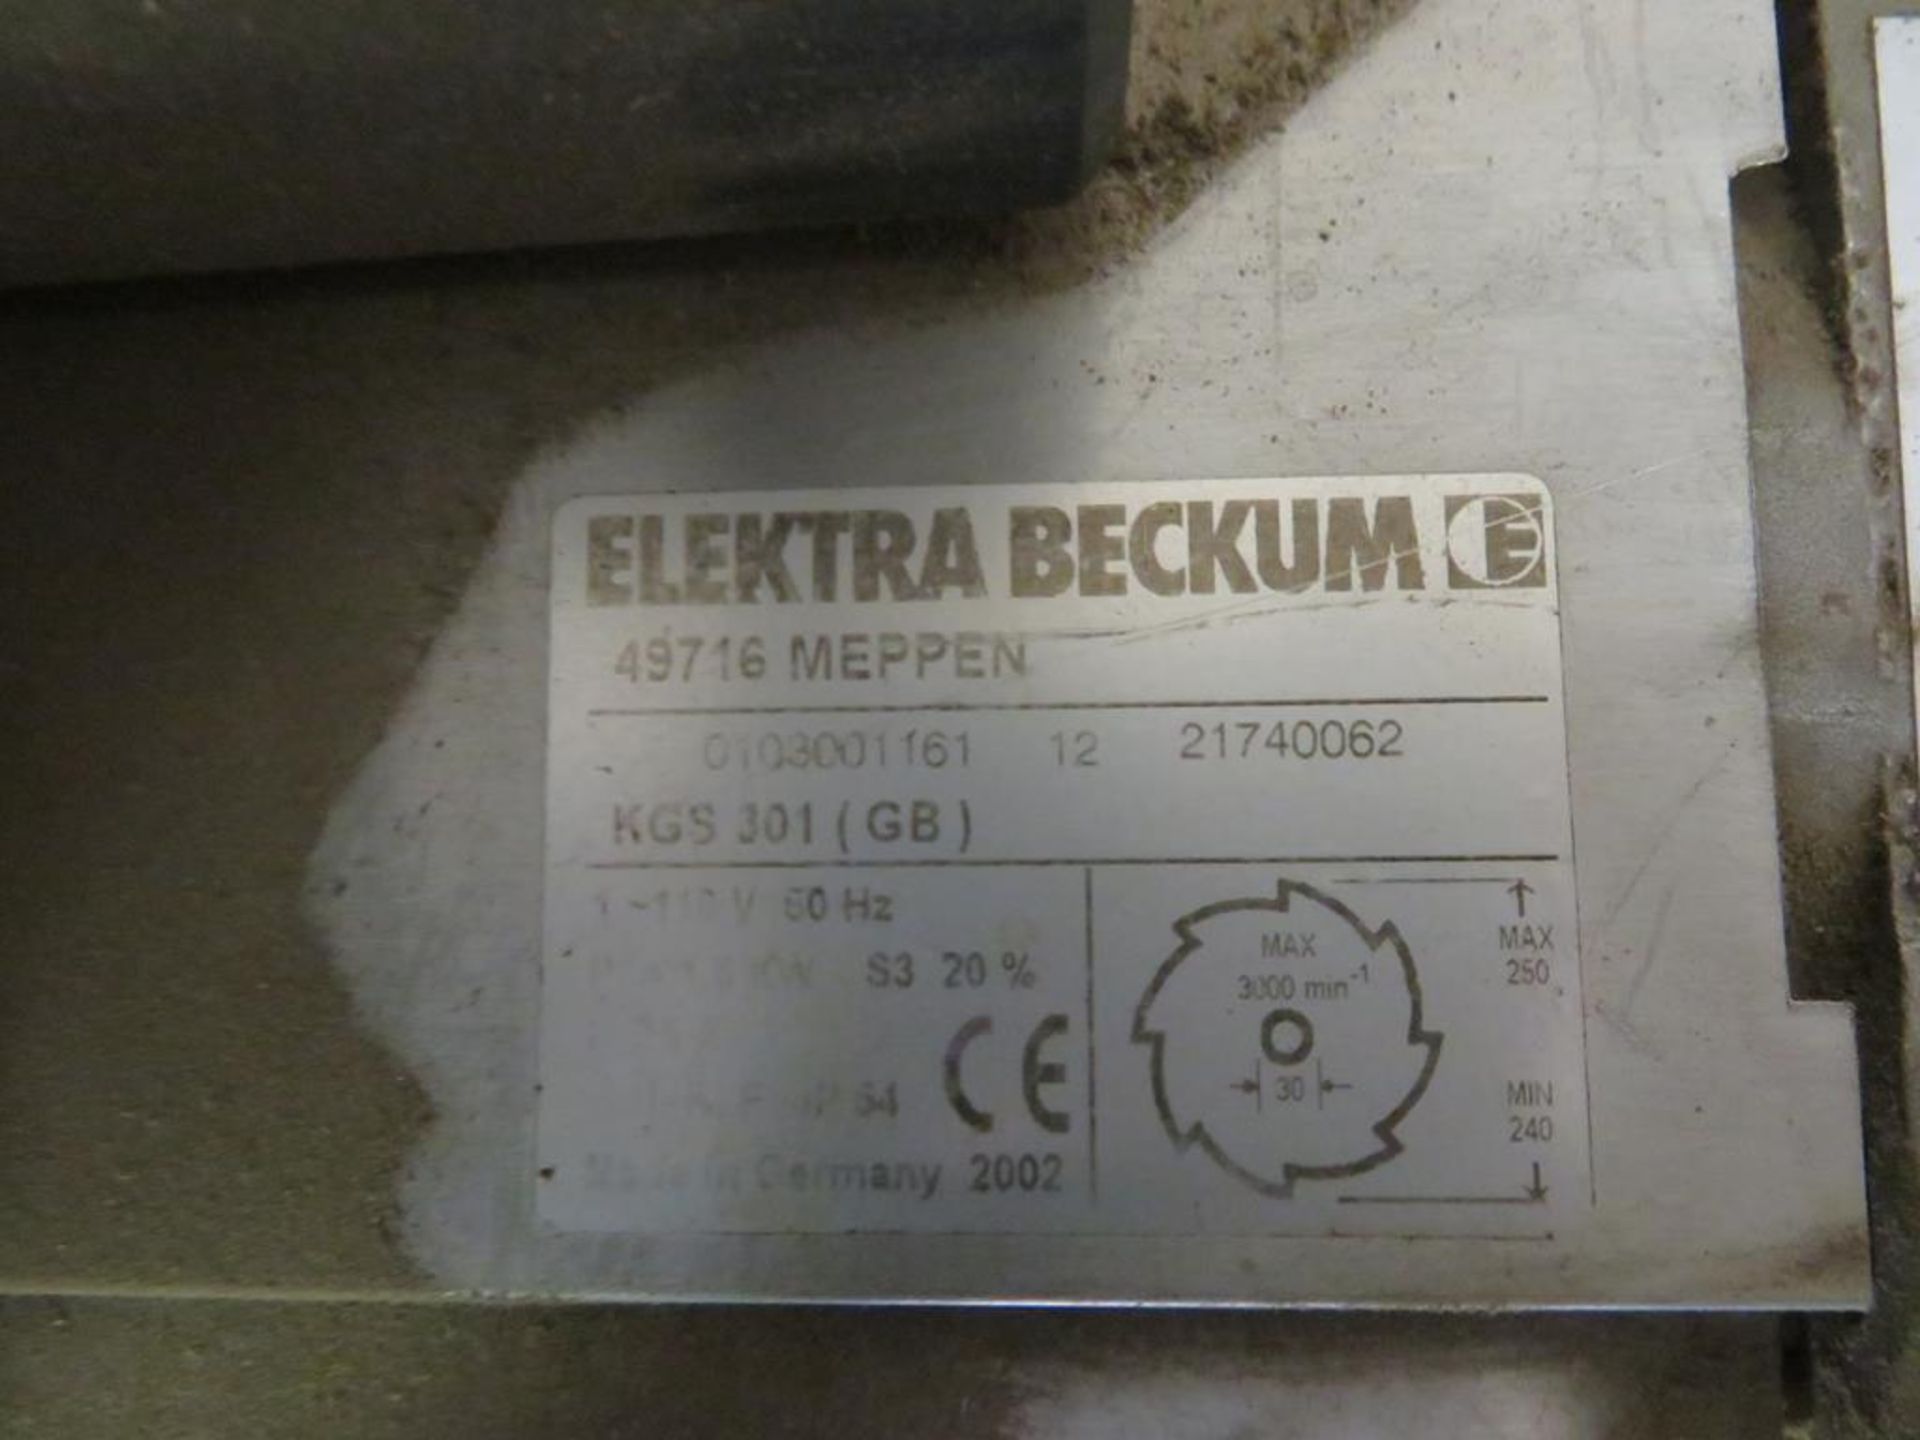 2002 Elektra Belkum KGS301? 110V Mitre Saw - Image 2 of 2